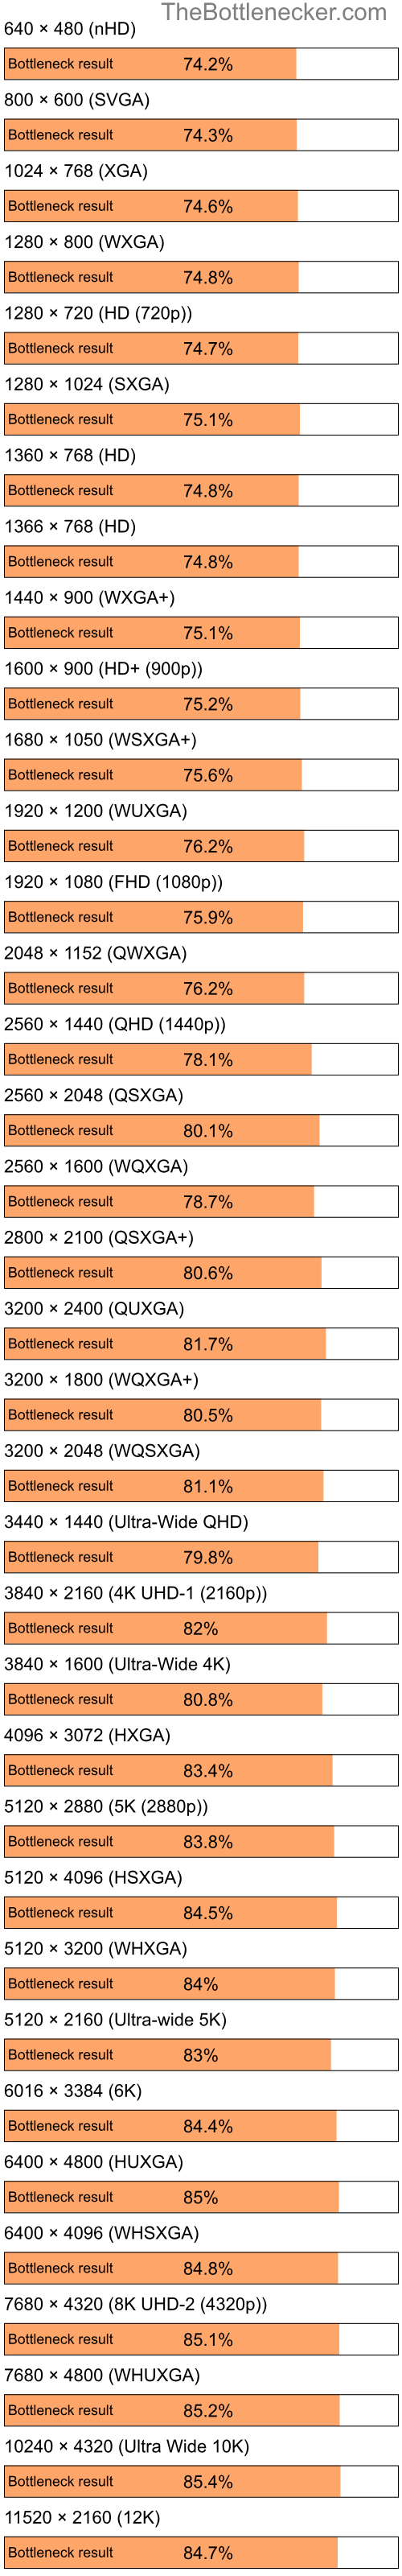 Bottleneck results by resolution for Intel Celeron and NVIDIA nForce 630i in General Tasks